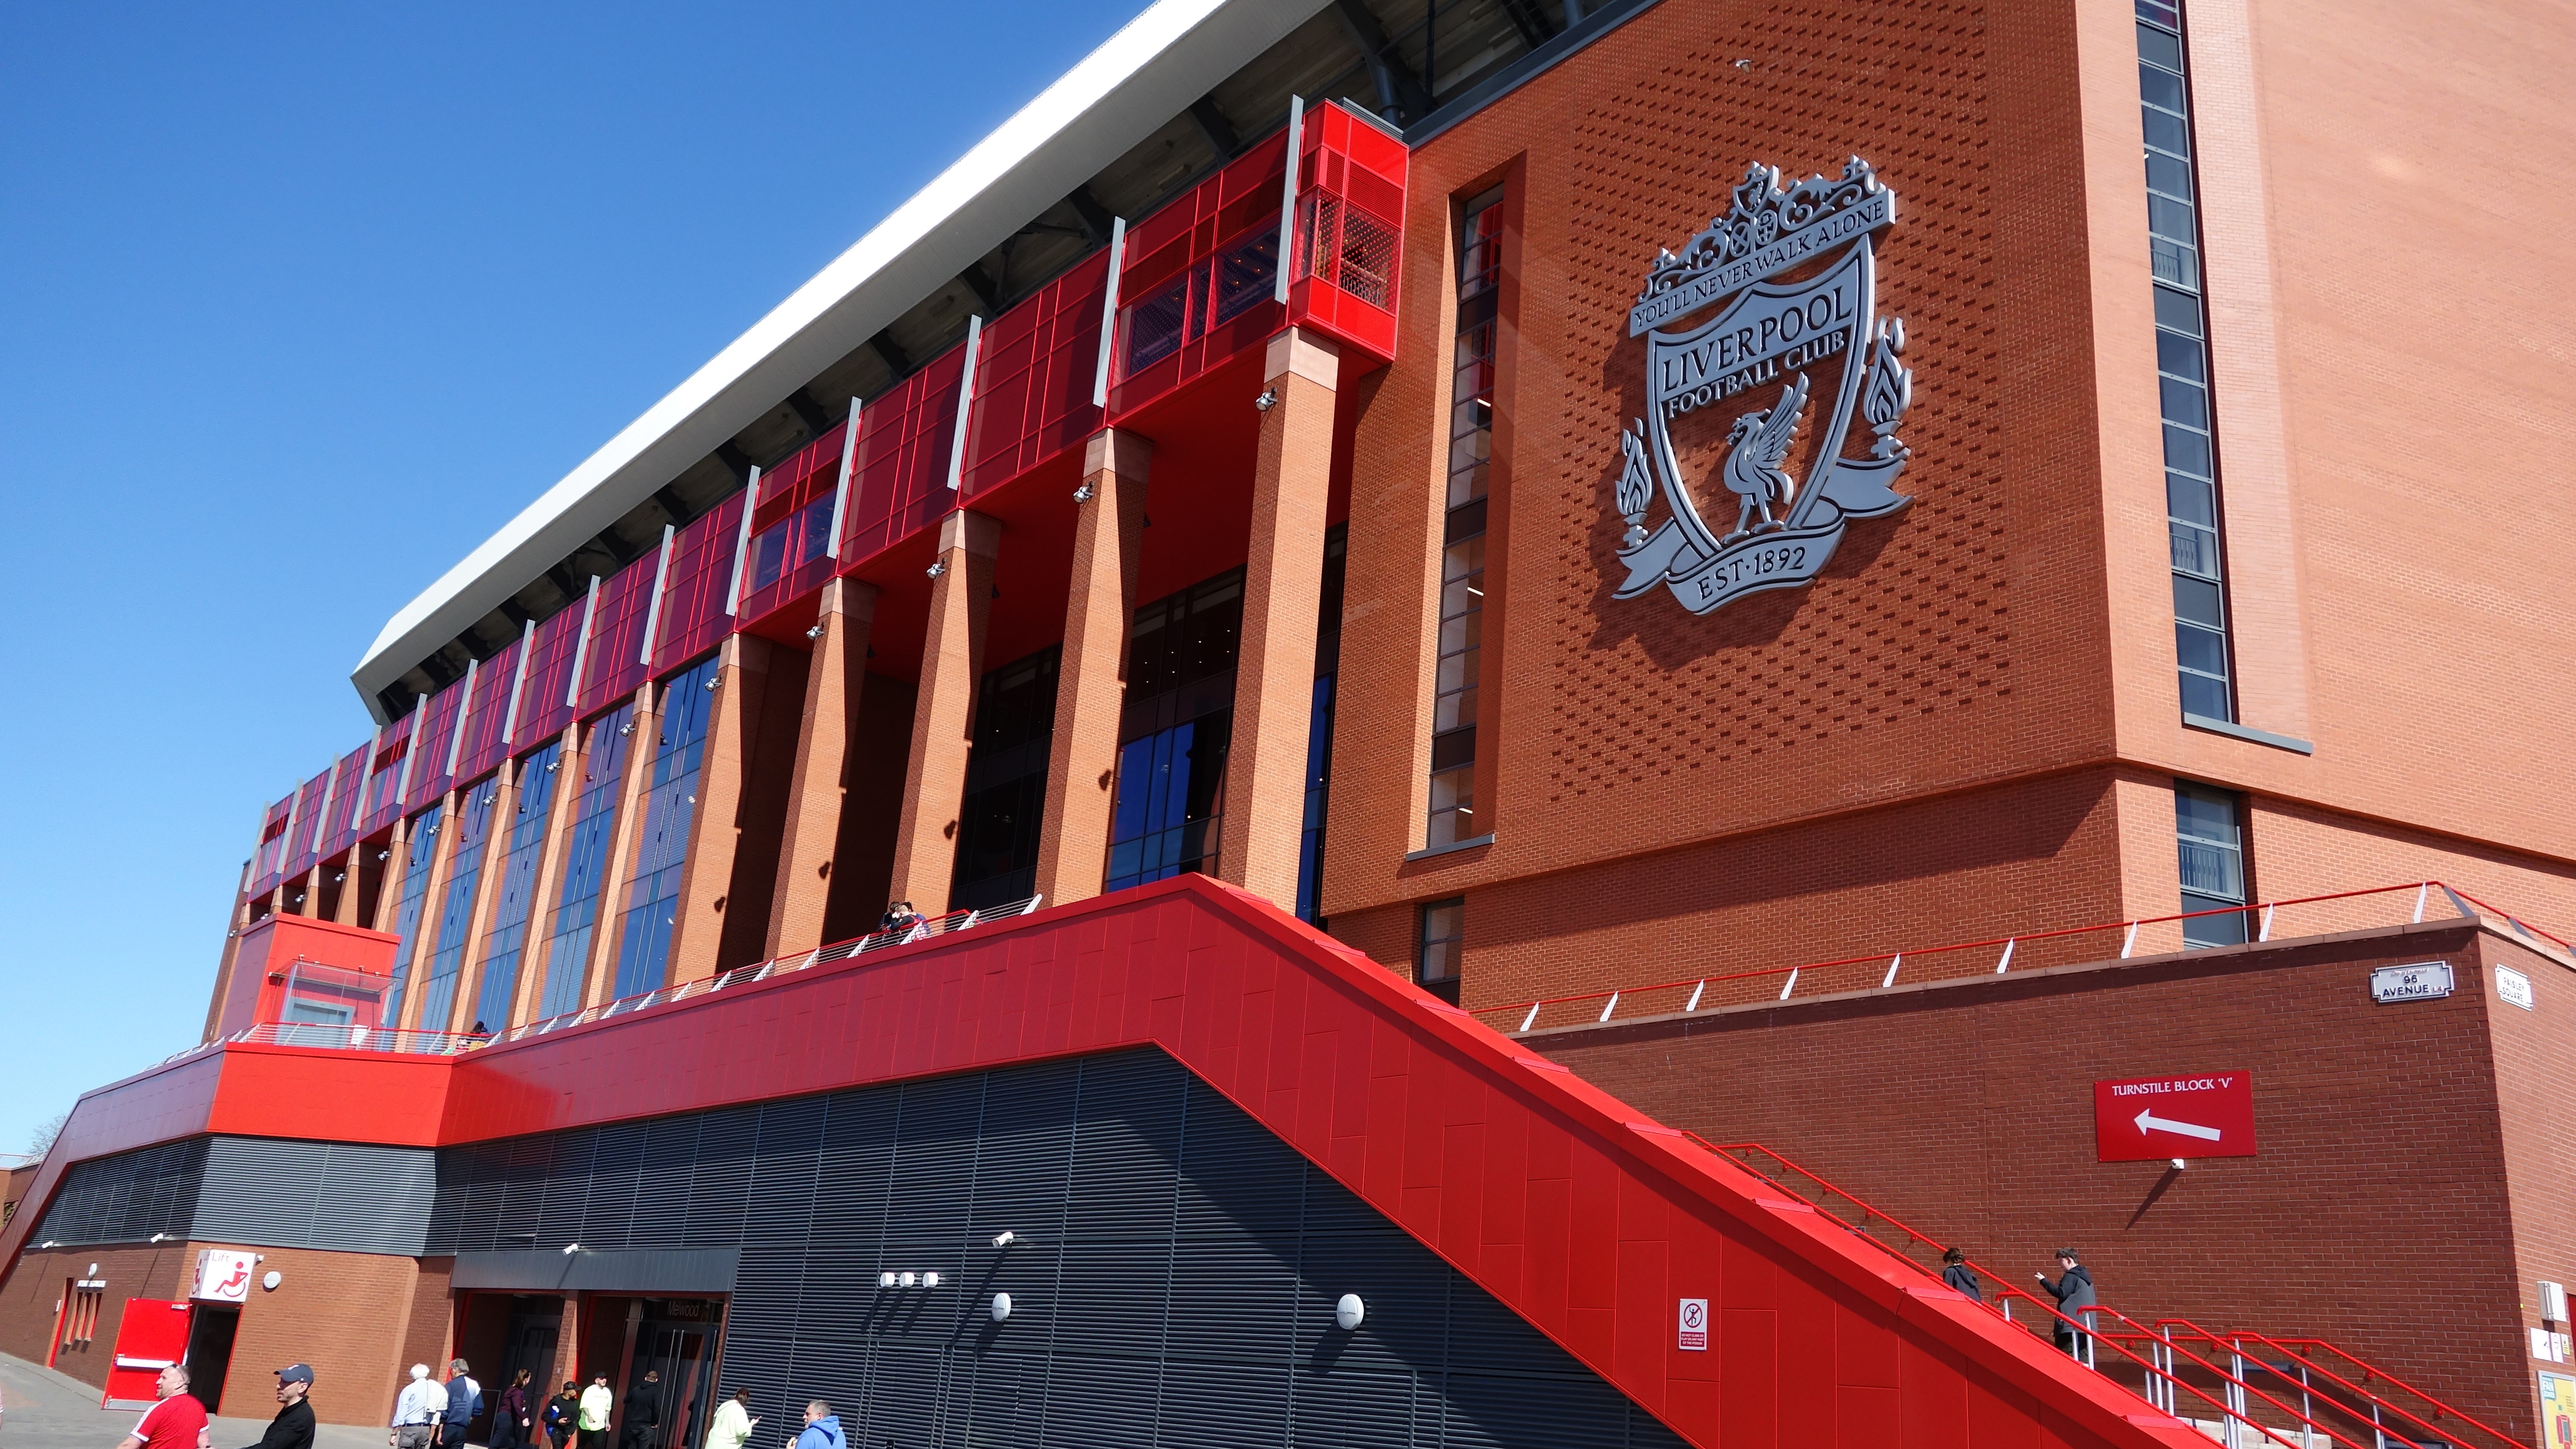 Liverpool Football Club stadium